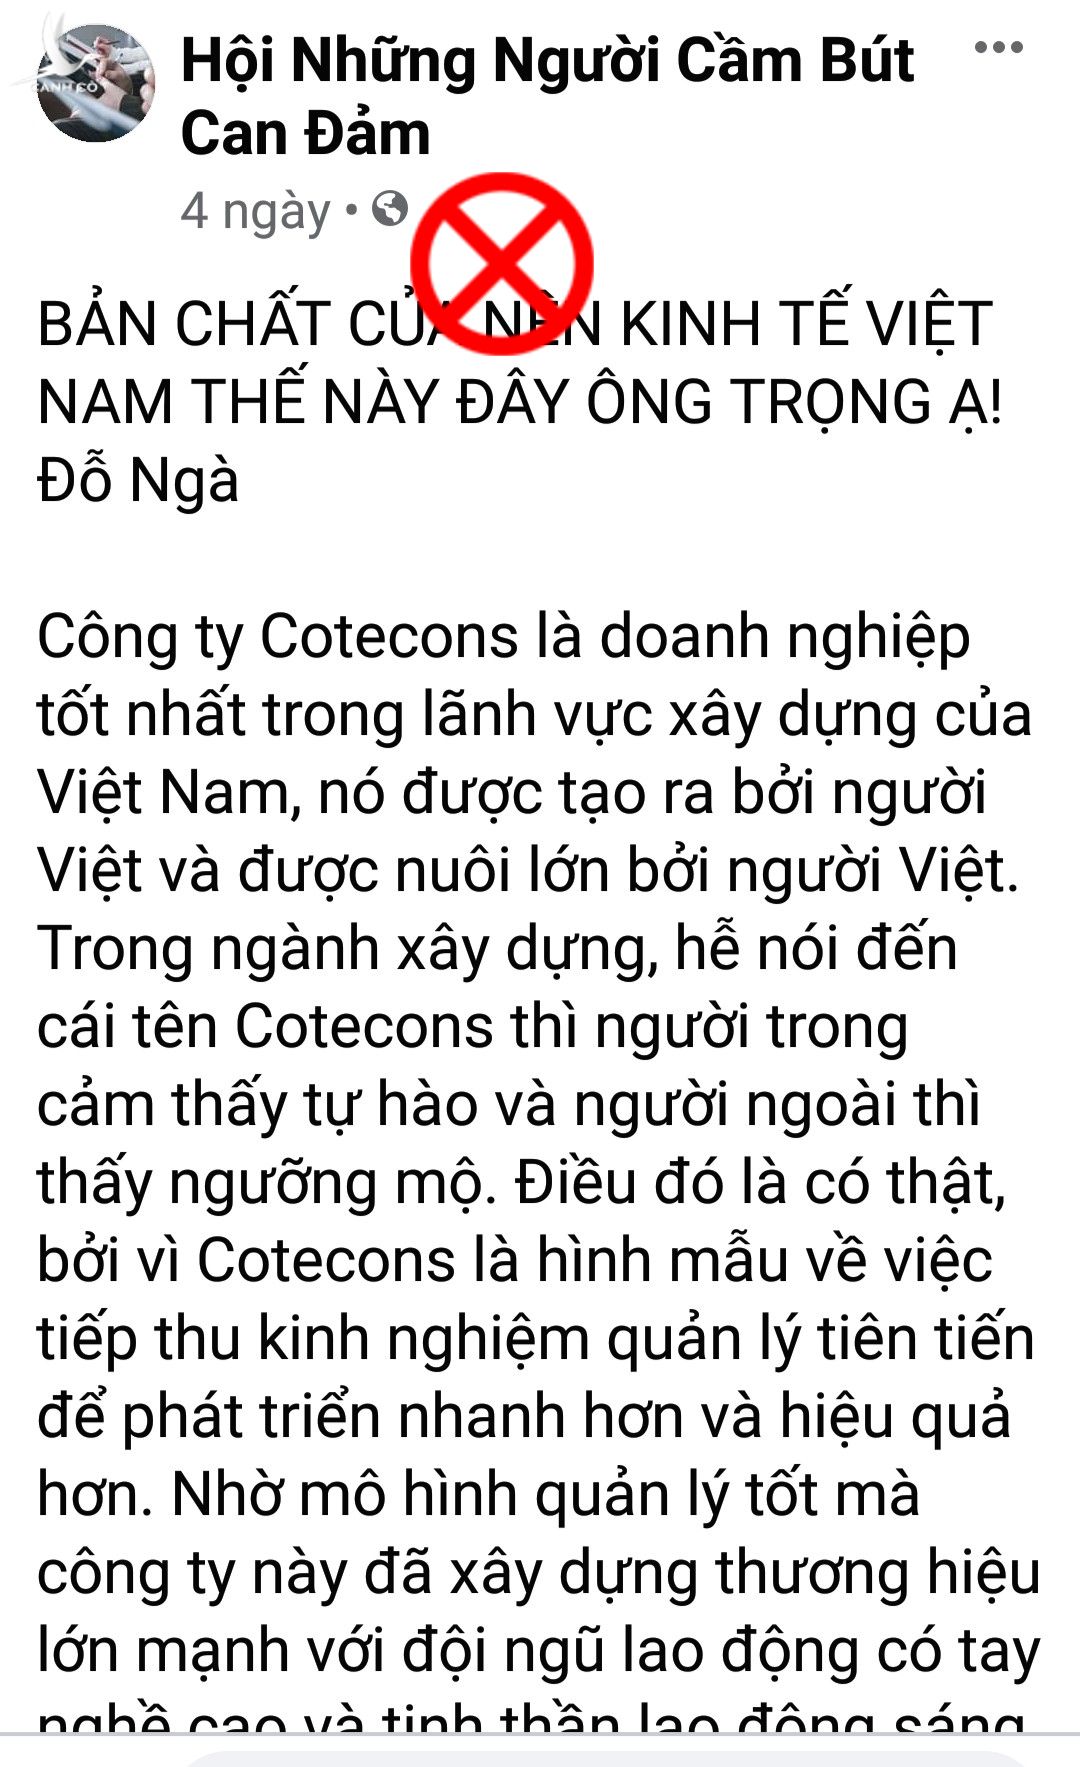 Đỗ Ngà lại lộng ngôn về kinh tế Việt Nam.